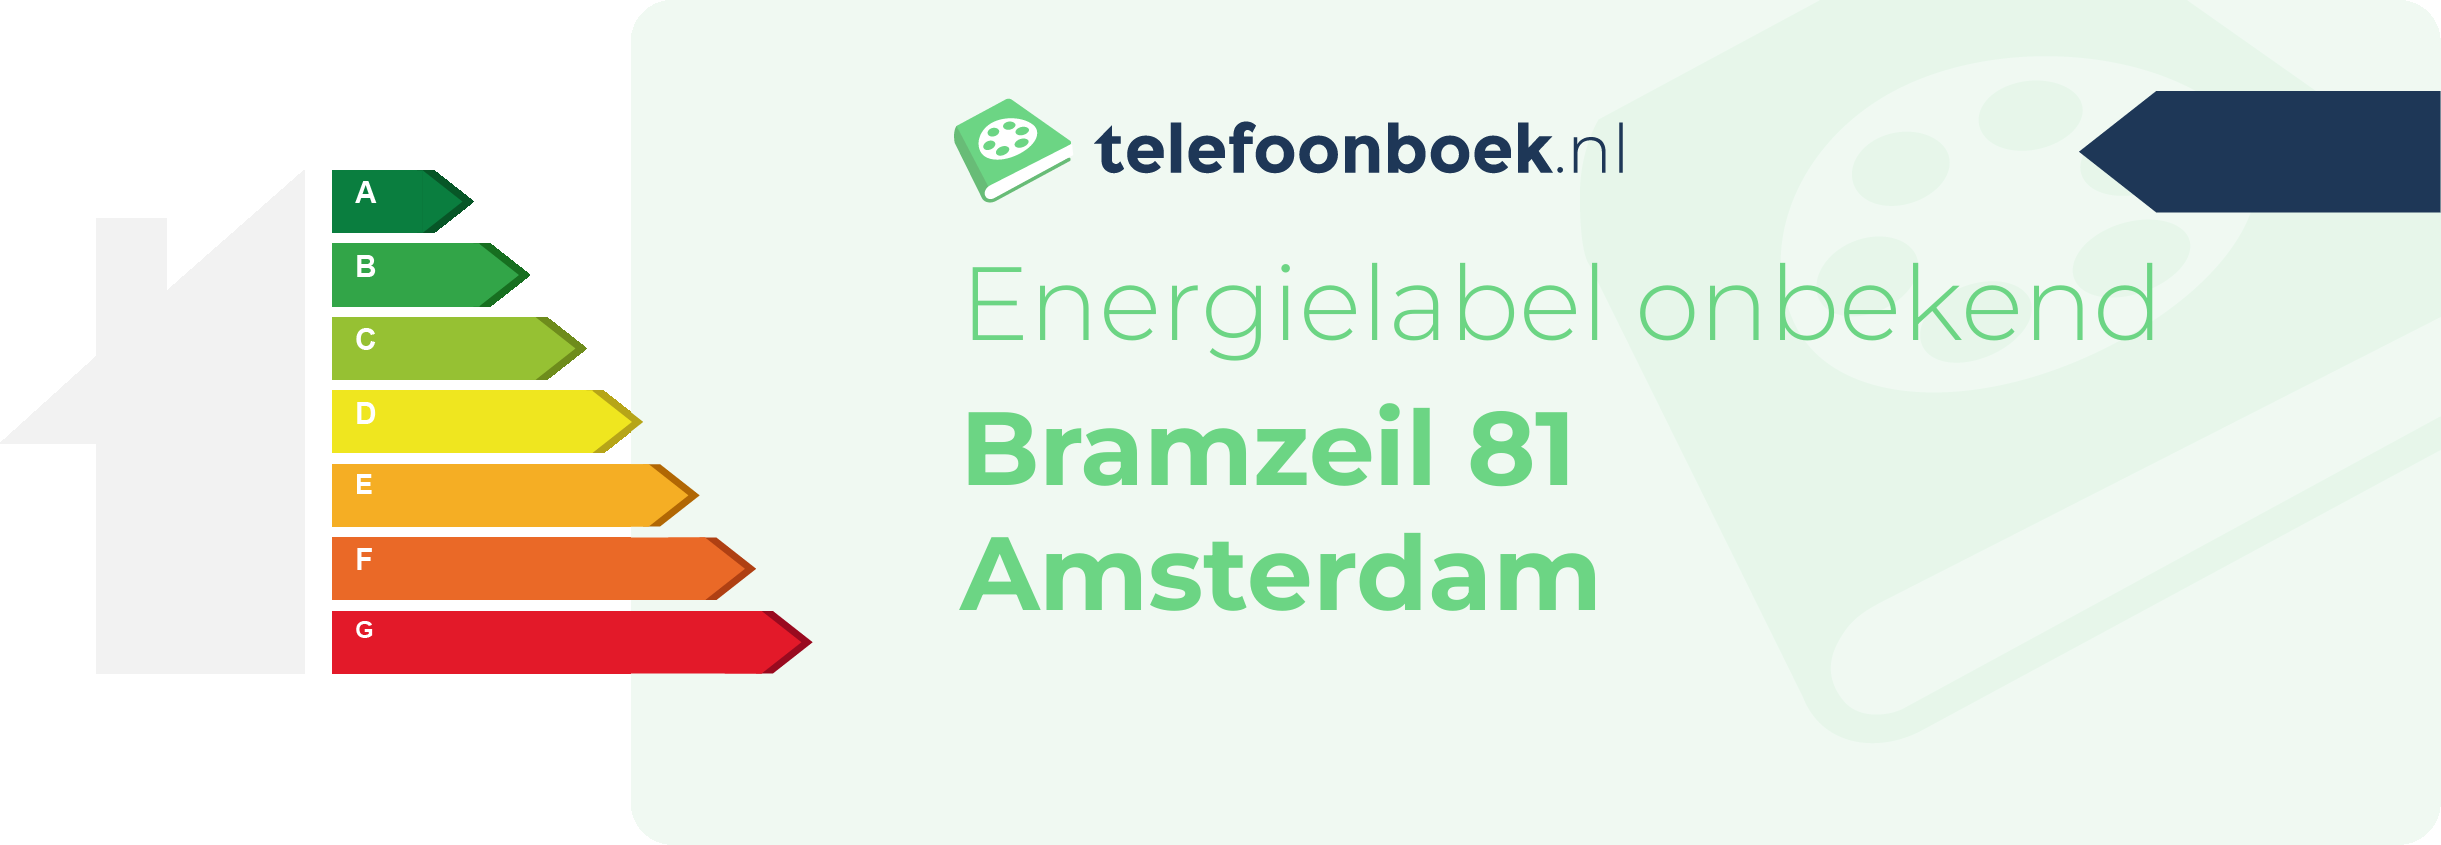 Energielabel Bramzeil 81 Amsterdam